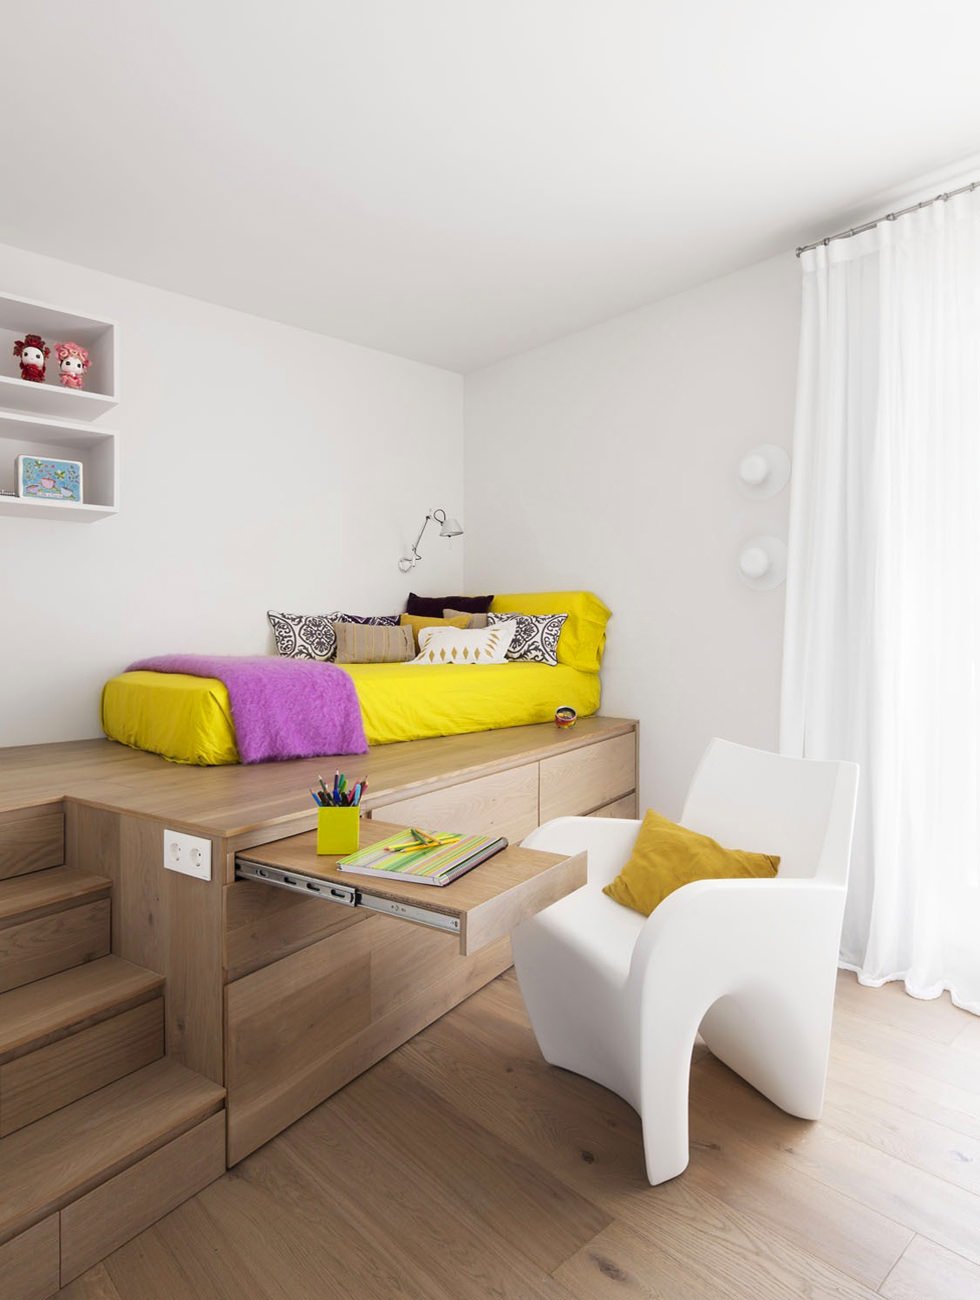 Design stanza per bambini pratica e funzionale con il letto posizionato sopra un mobile in legno che fa da armadio e anche da scrivania - semplice, funzionale e affascinante